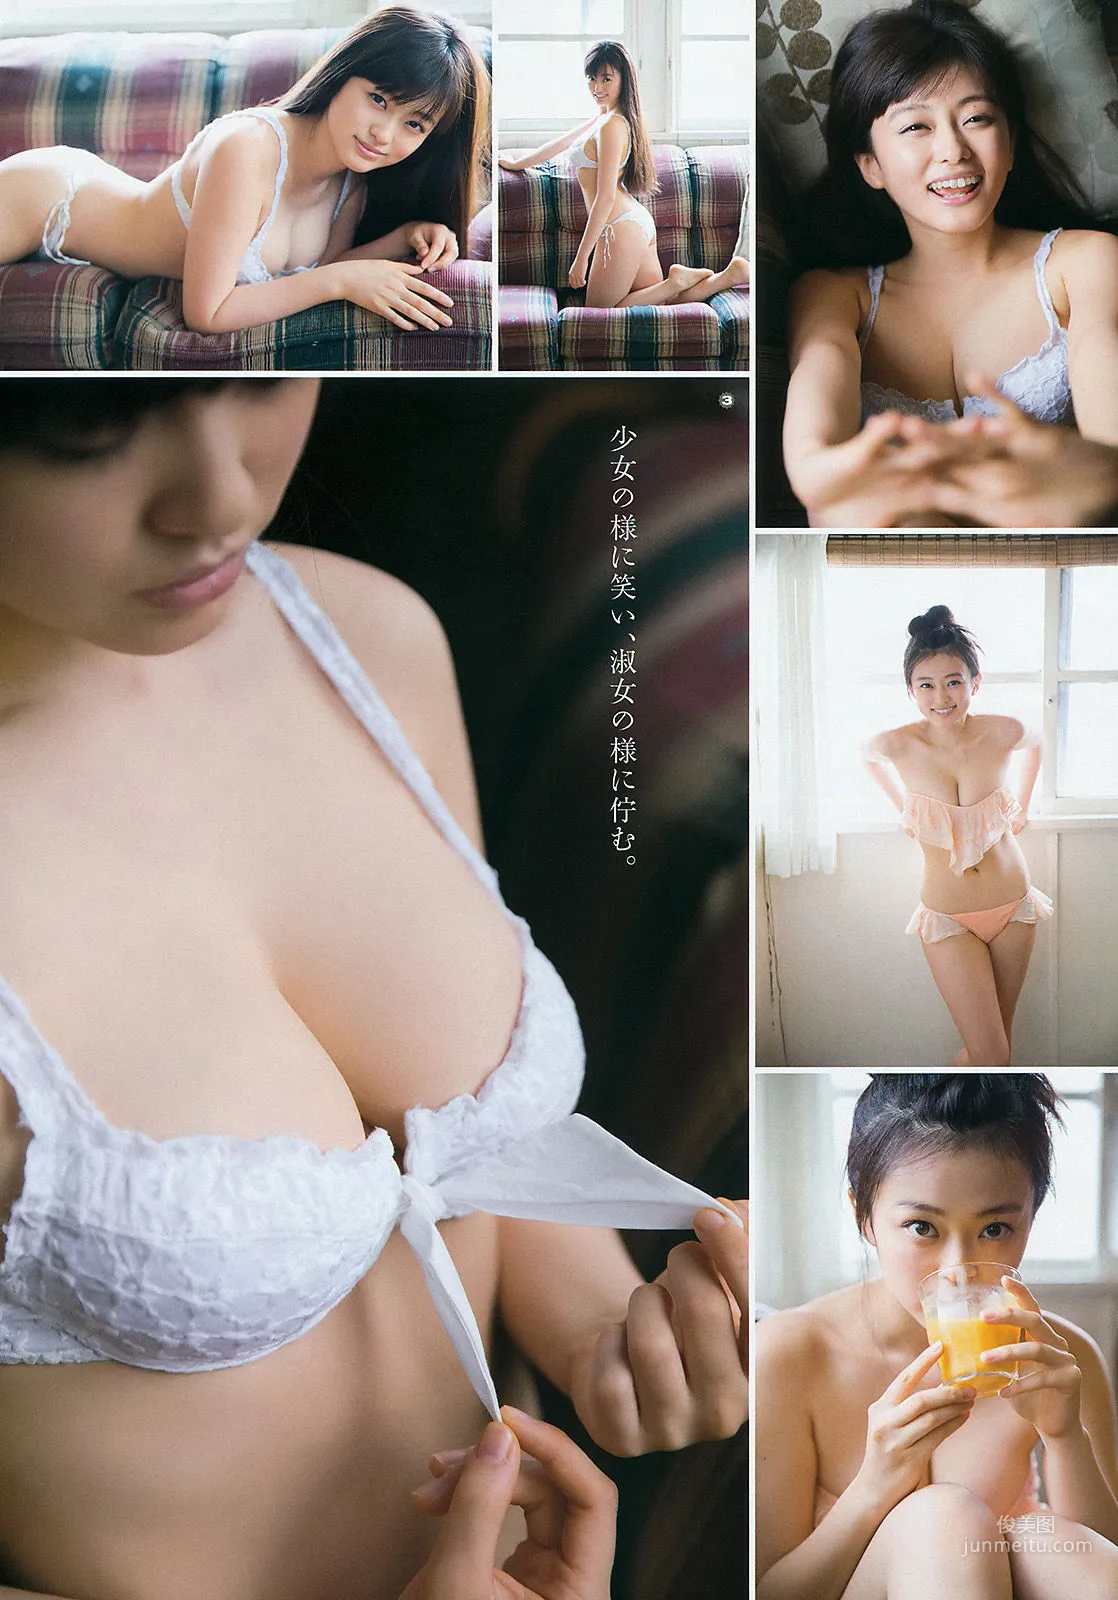 [Young Gangan] 新井愛瞳 山地まり 2015年No.11 写真杂志11